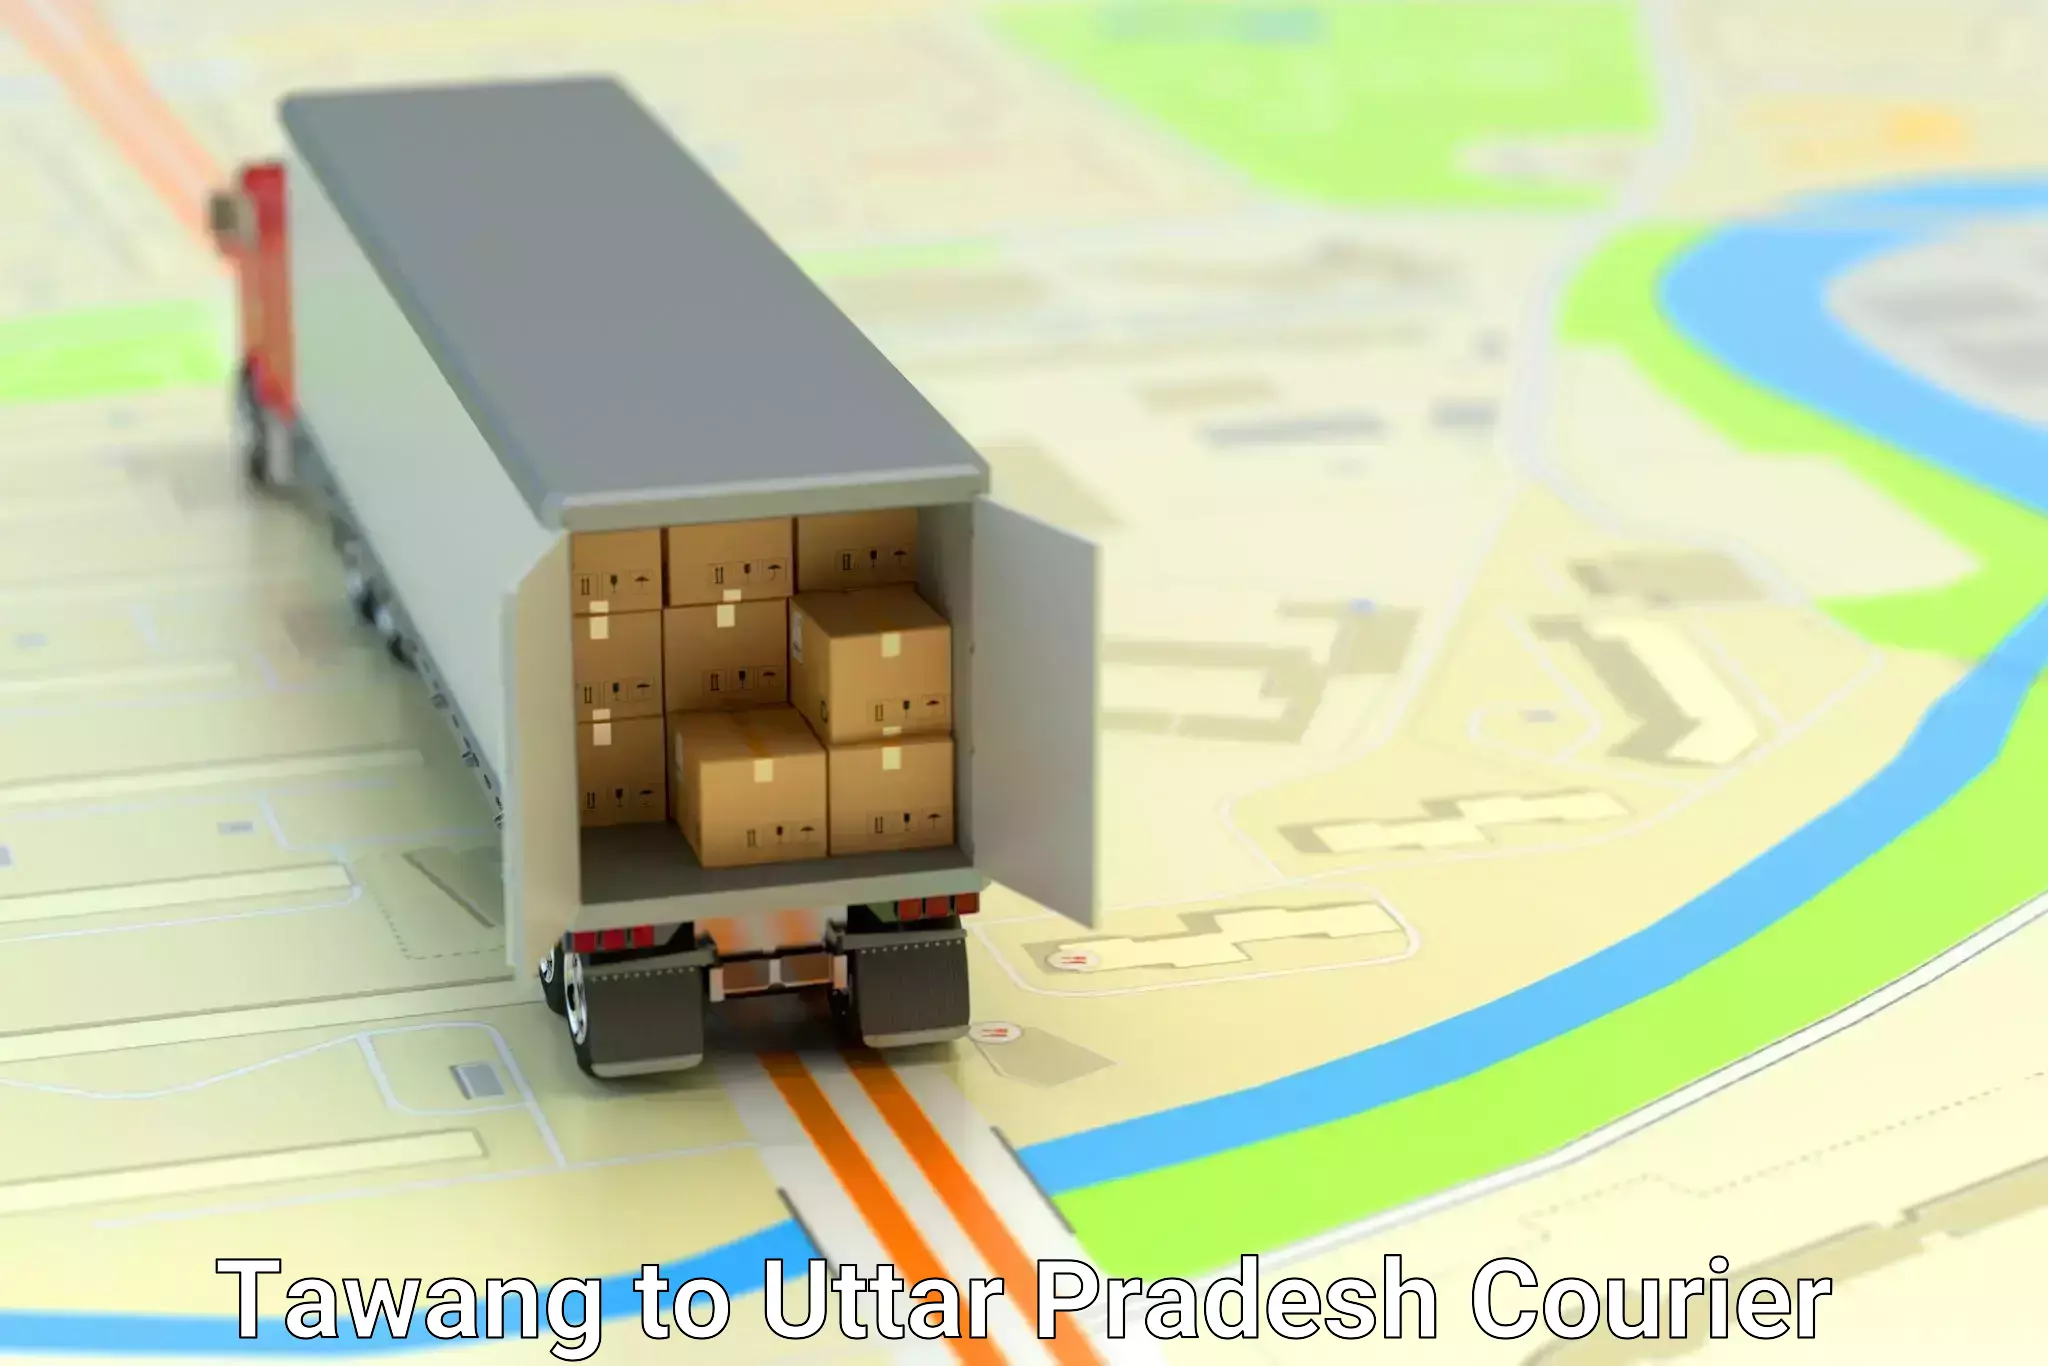 Global logistics network Tawang to Aliganj